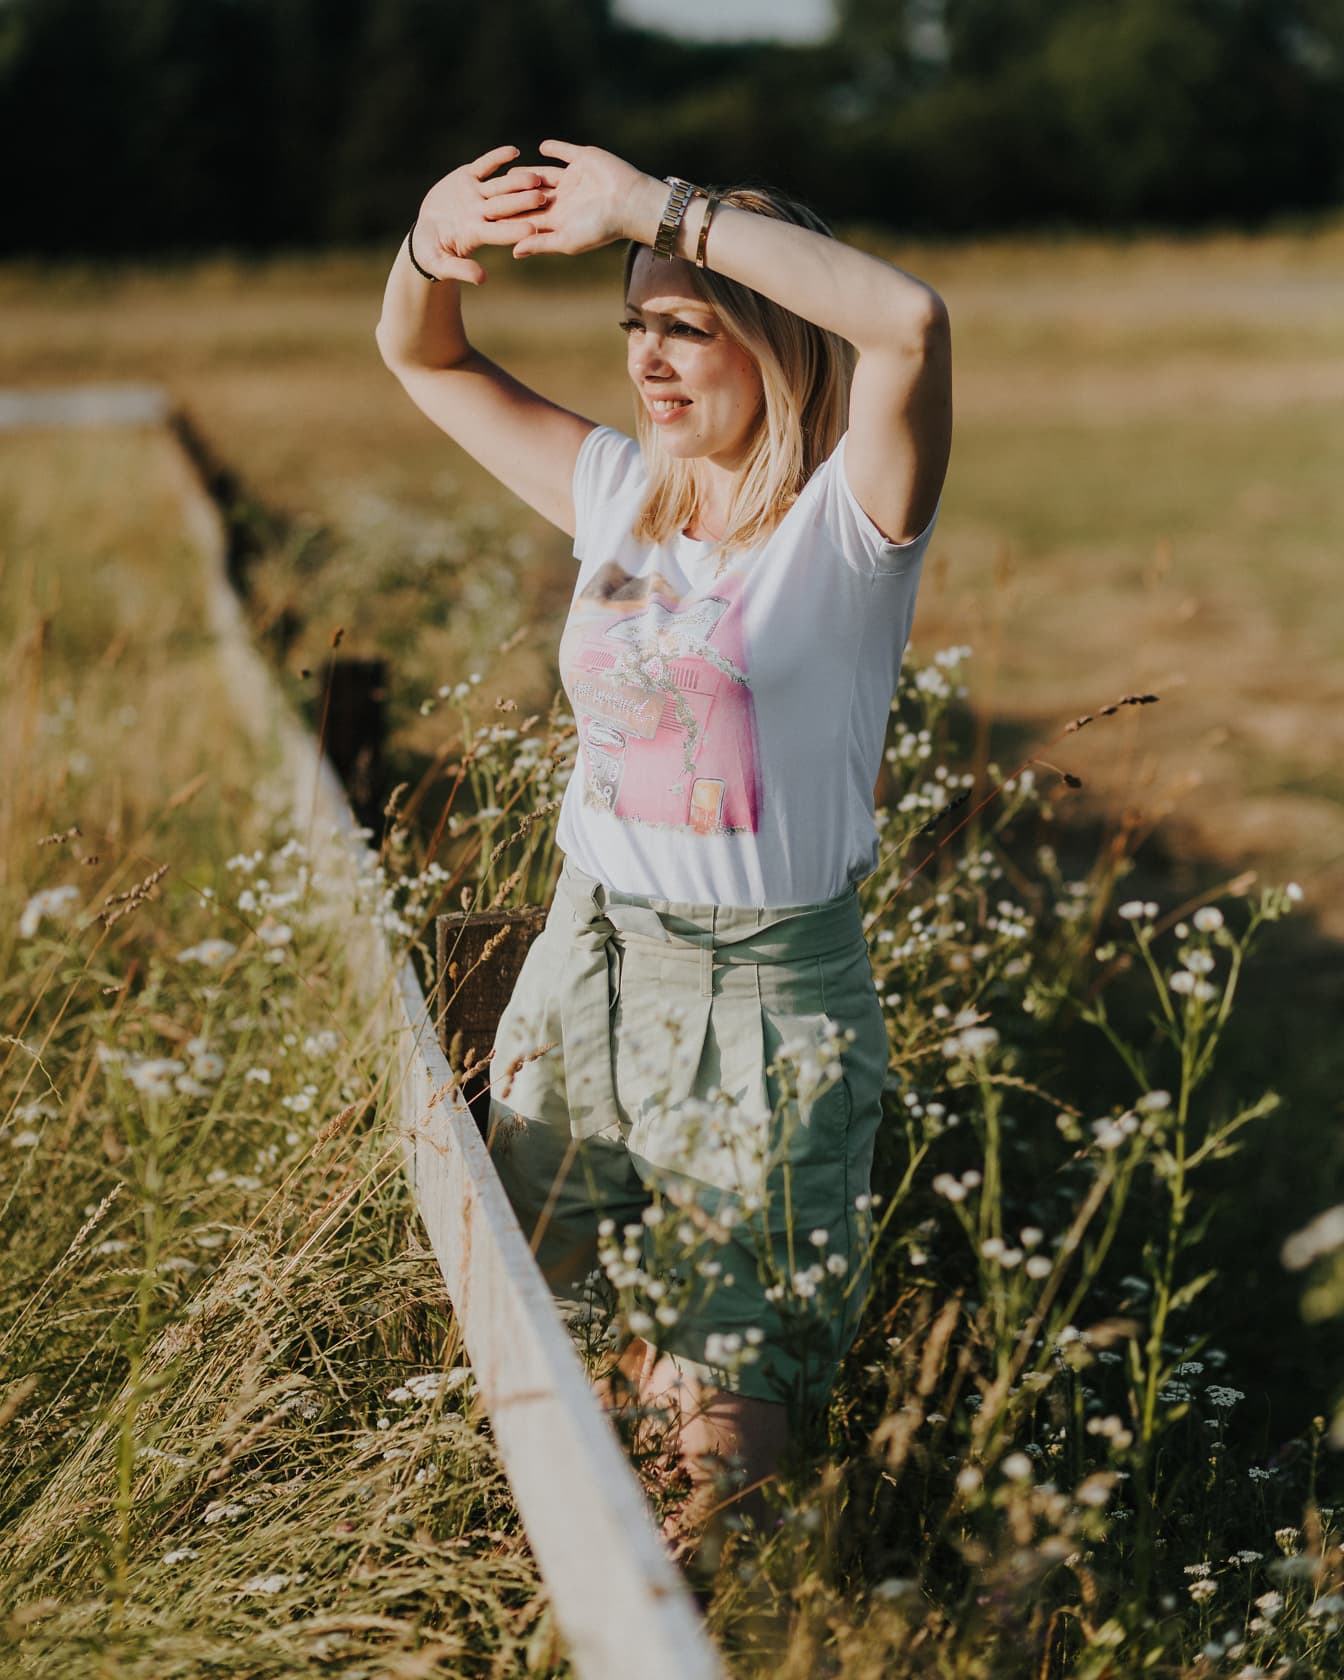 Mujer alegre del granjero de pie en un jardín del país con las manos levantadas